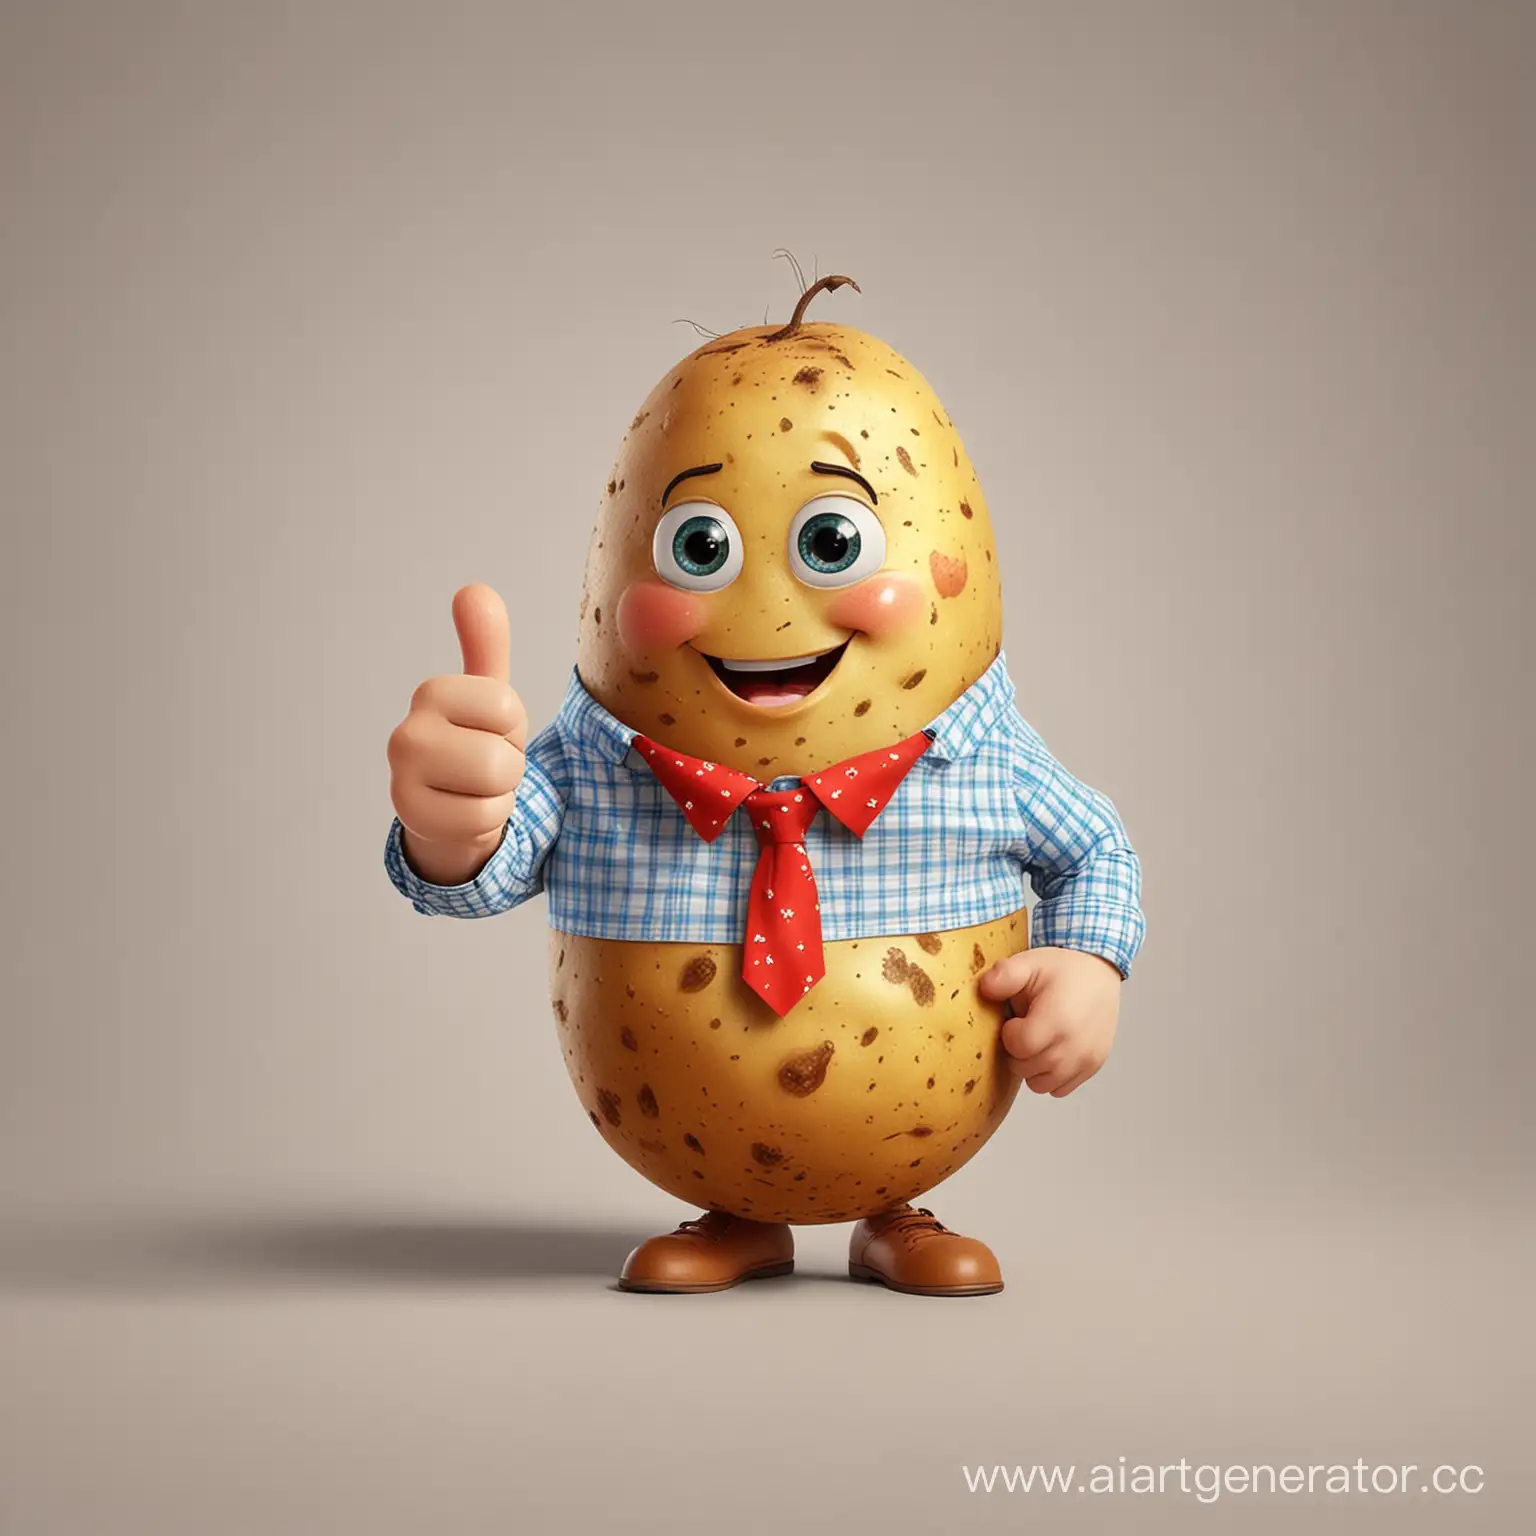 Картошка в рубашке косоворотке улыбается и 
показывает палец вверх